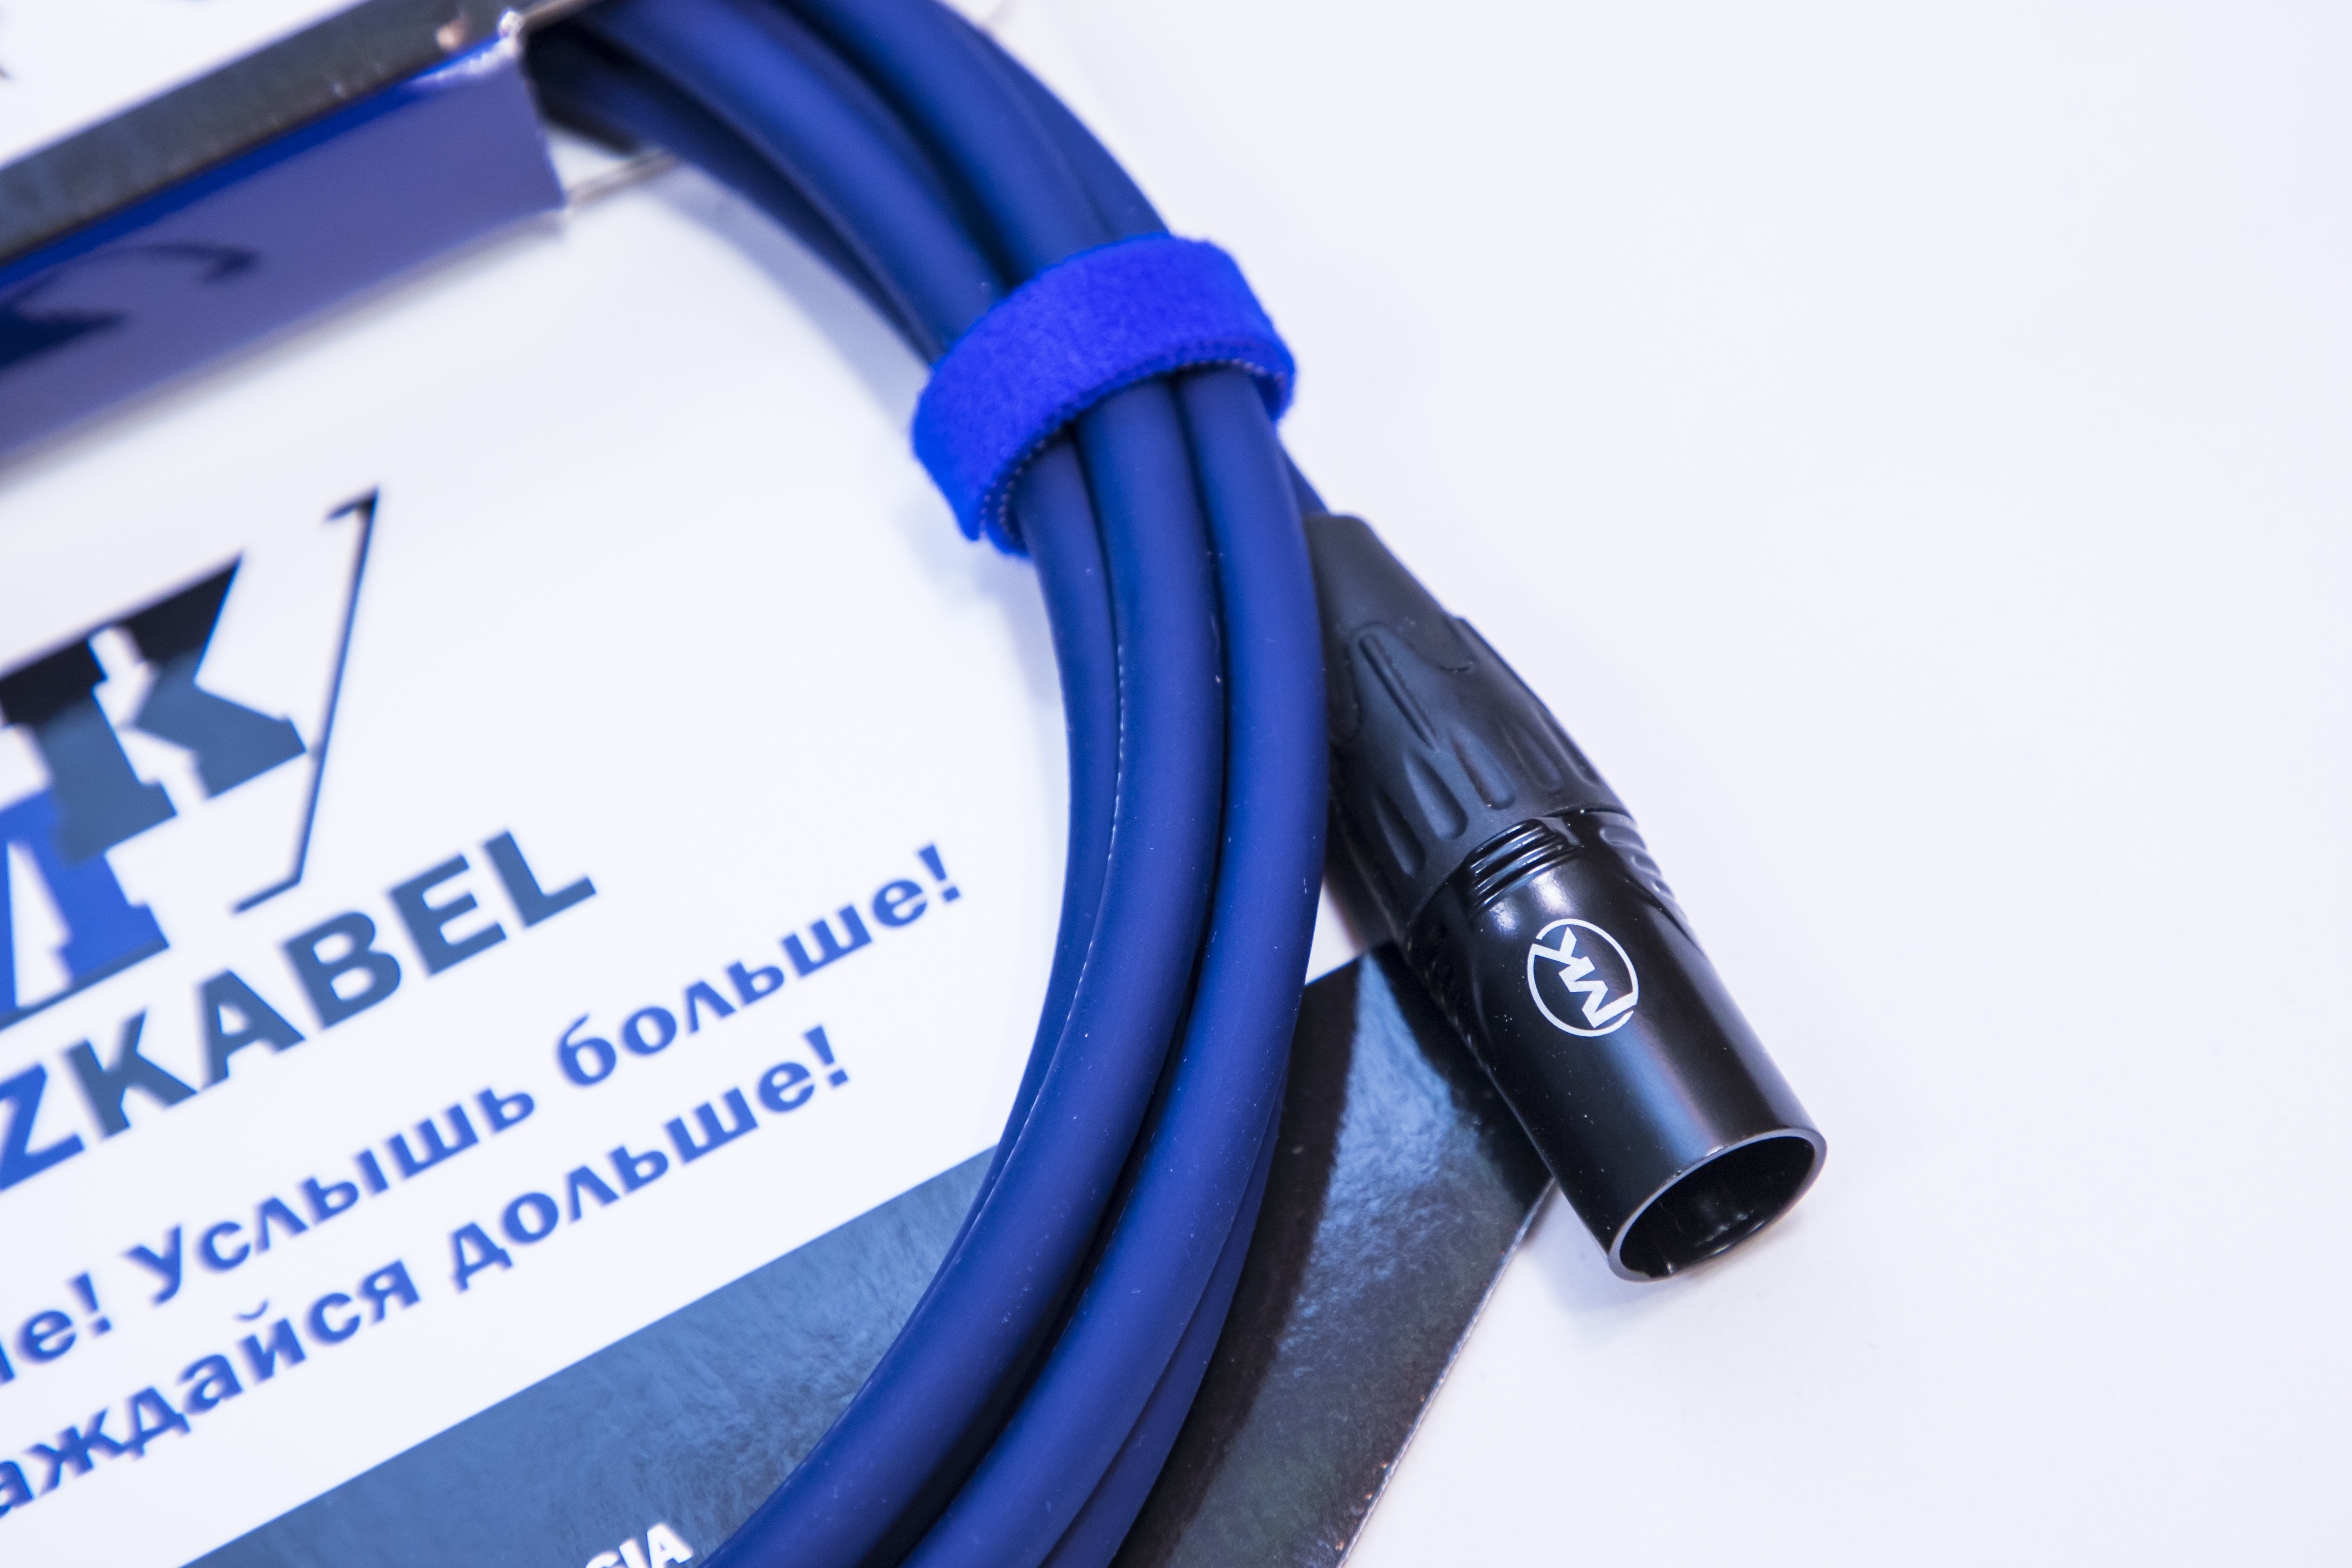 Микрофонный кабель MUZKABEL XXFMK1S - 5 метров, XLR – XLR